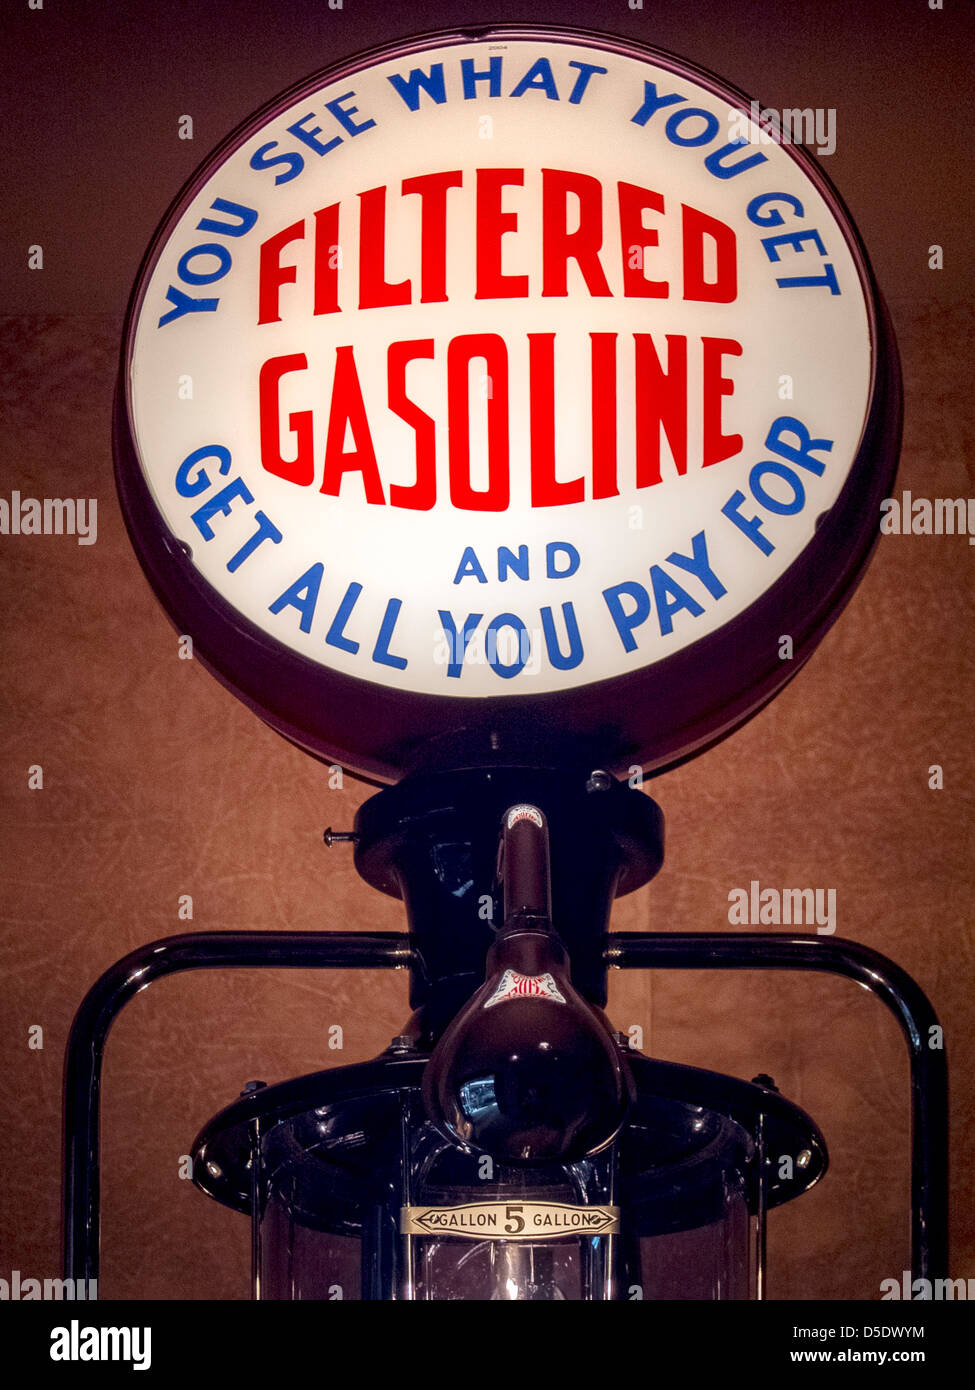 Una pubblicità segnale luminoso su un 1935 Bennett 150 della stazione di servizio della pompa di benzina promette un accordo equo per i clienti. Foto Stock